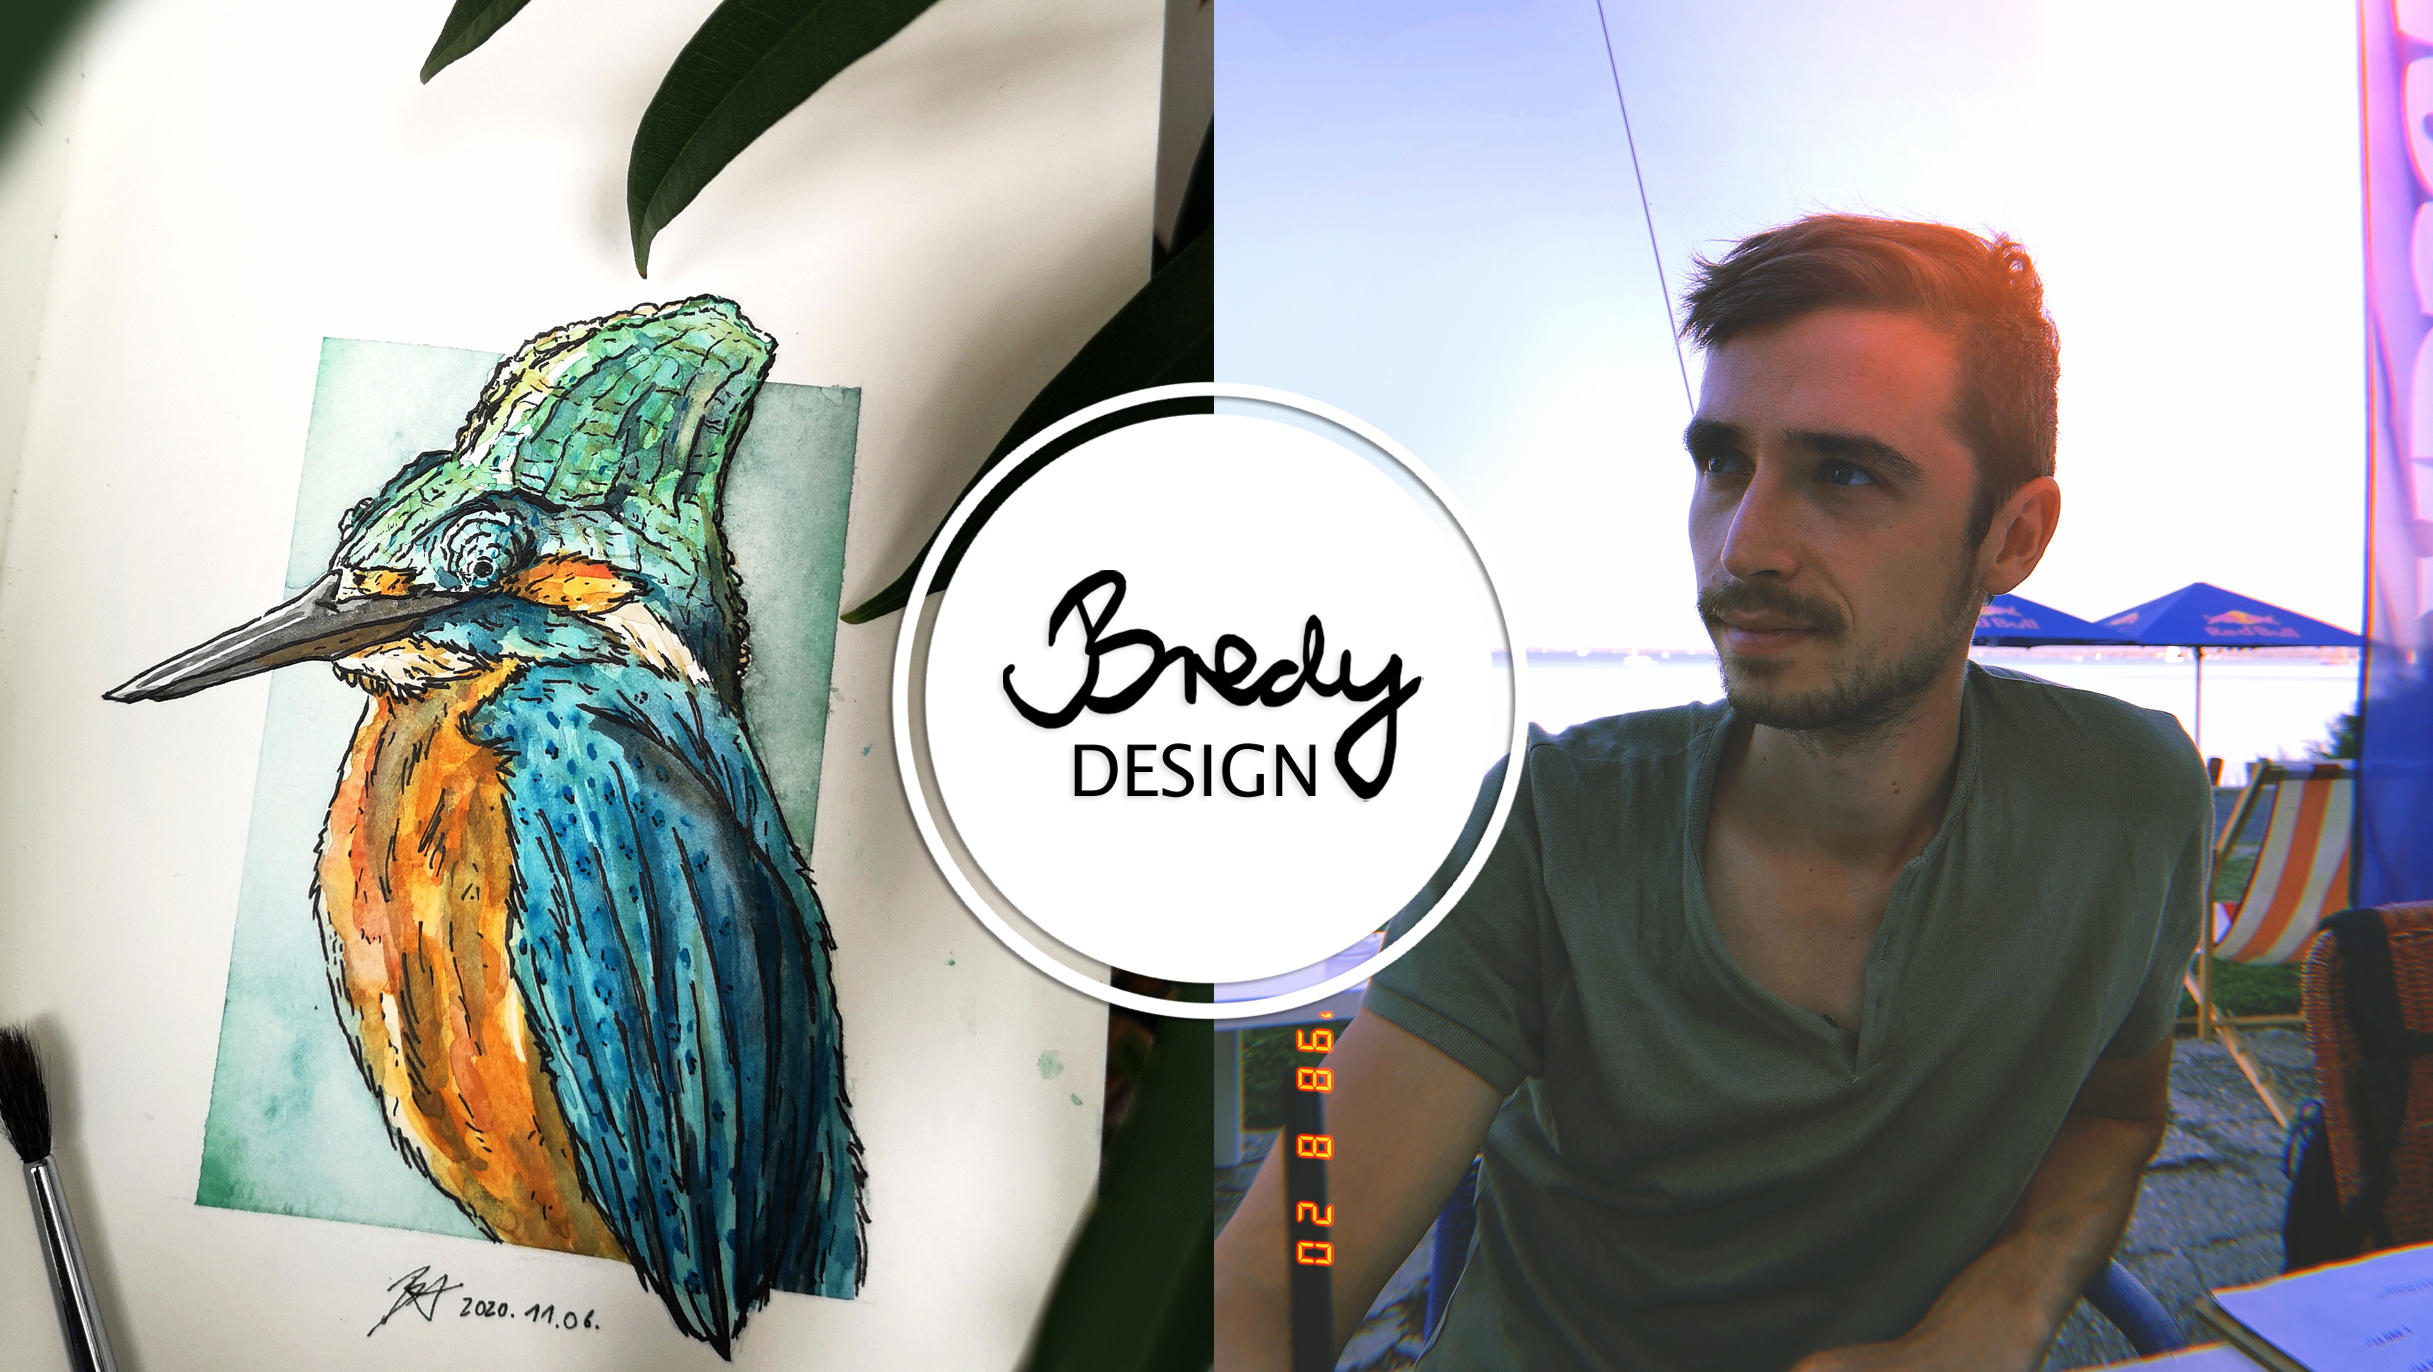 "A vízfesték az egyik legjobb társam" - Bredy Design nagyinterjú